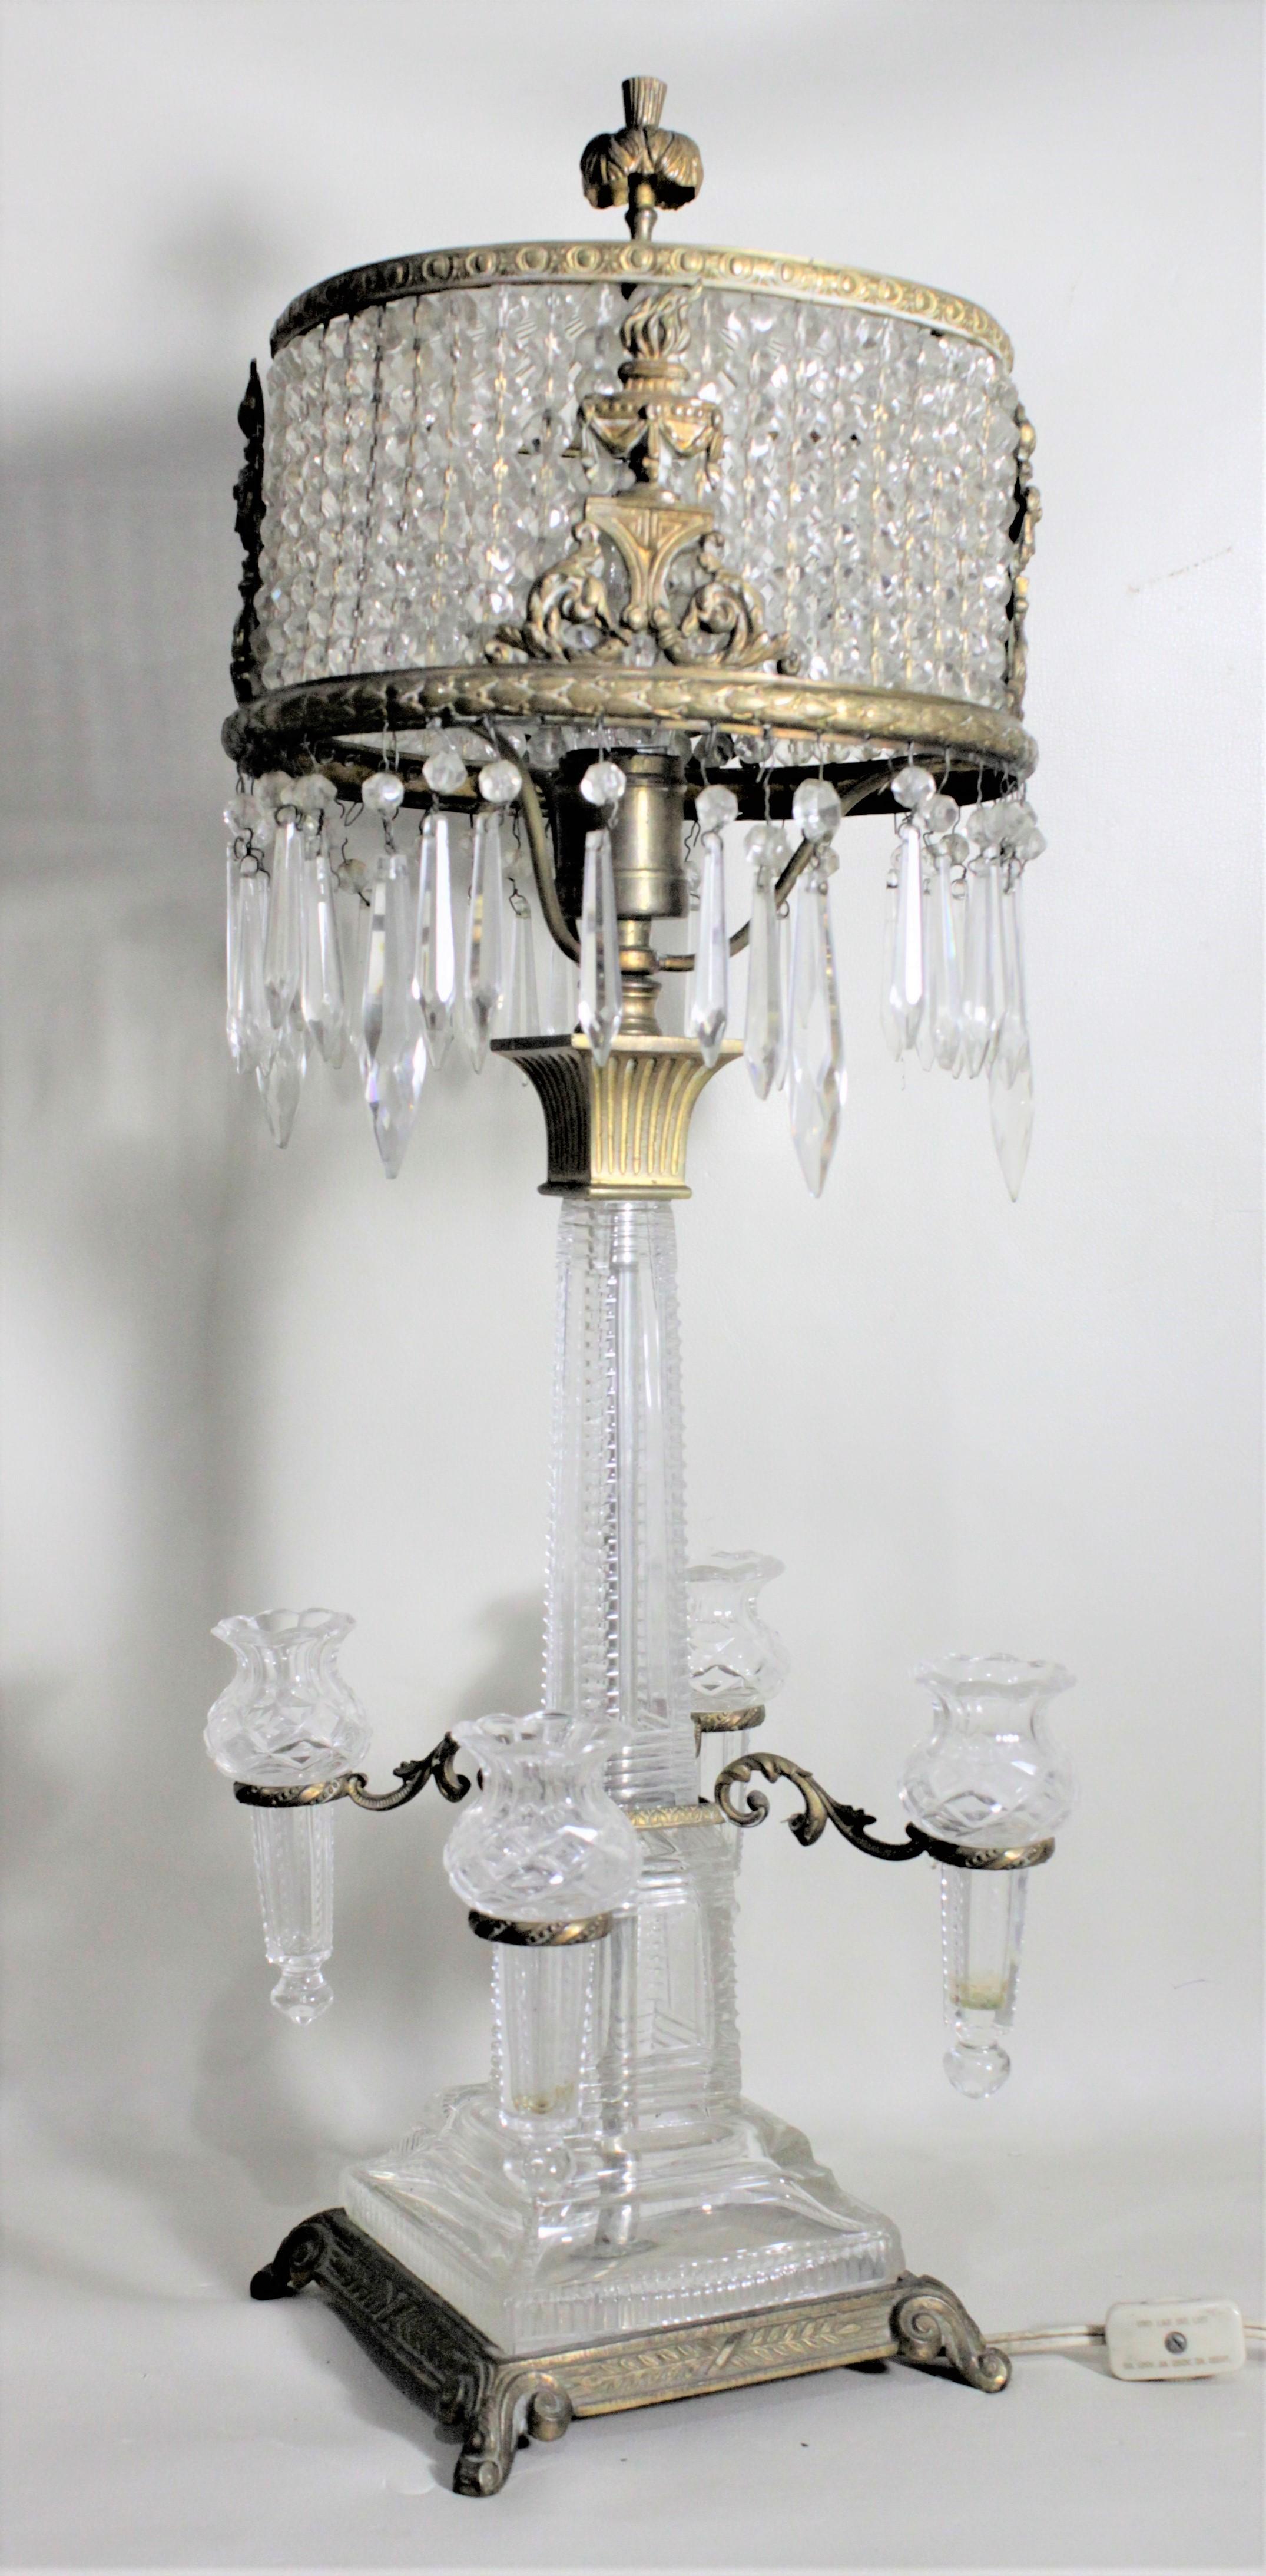 Cette lampe en cristal antique très unique n'est pas signée, mais on suppose qu'elle a été fabriquée en Europe continentale, très probablement en Autriche, vers 1900 dans le style édouardien de l'époque. Cette lampe est composée de verre et de